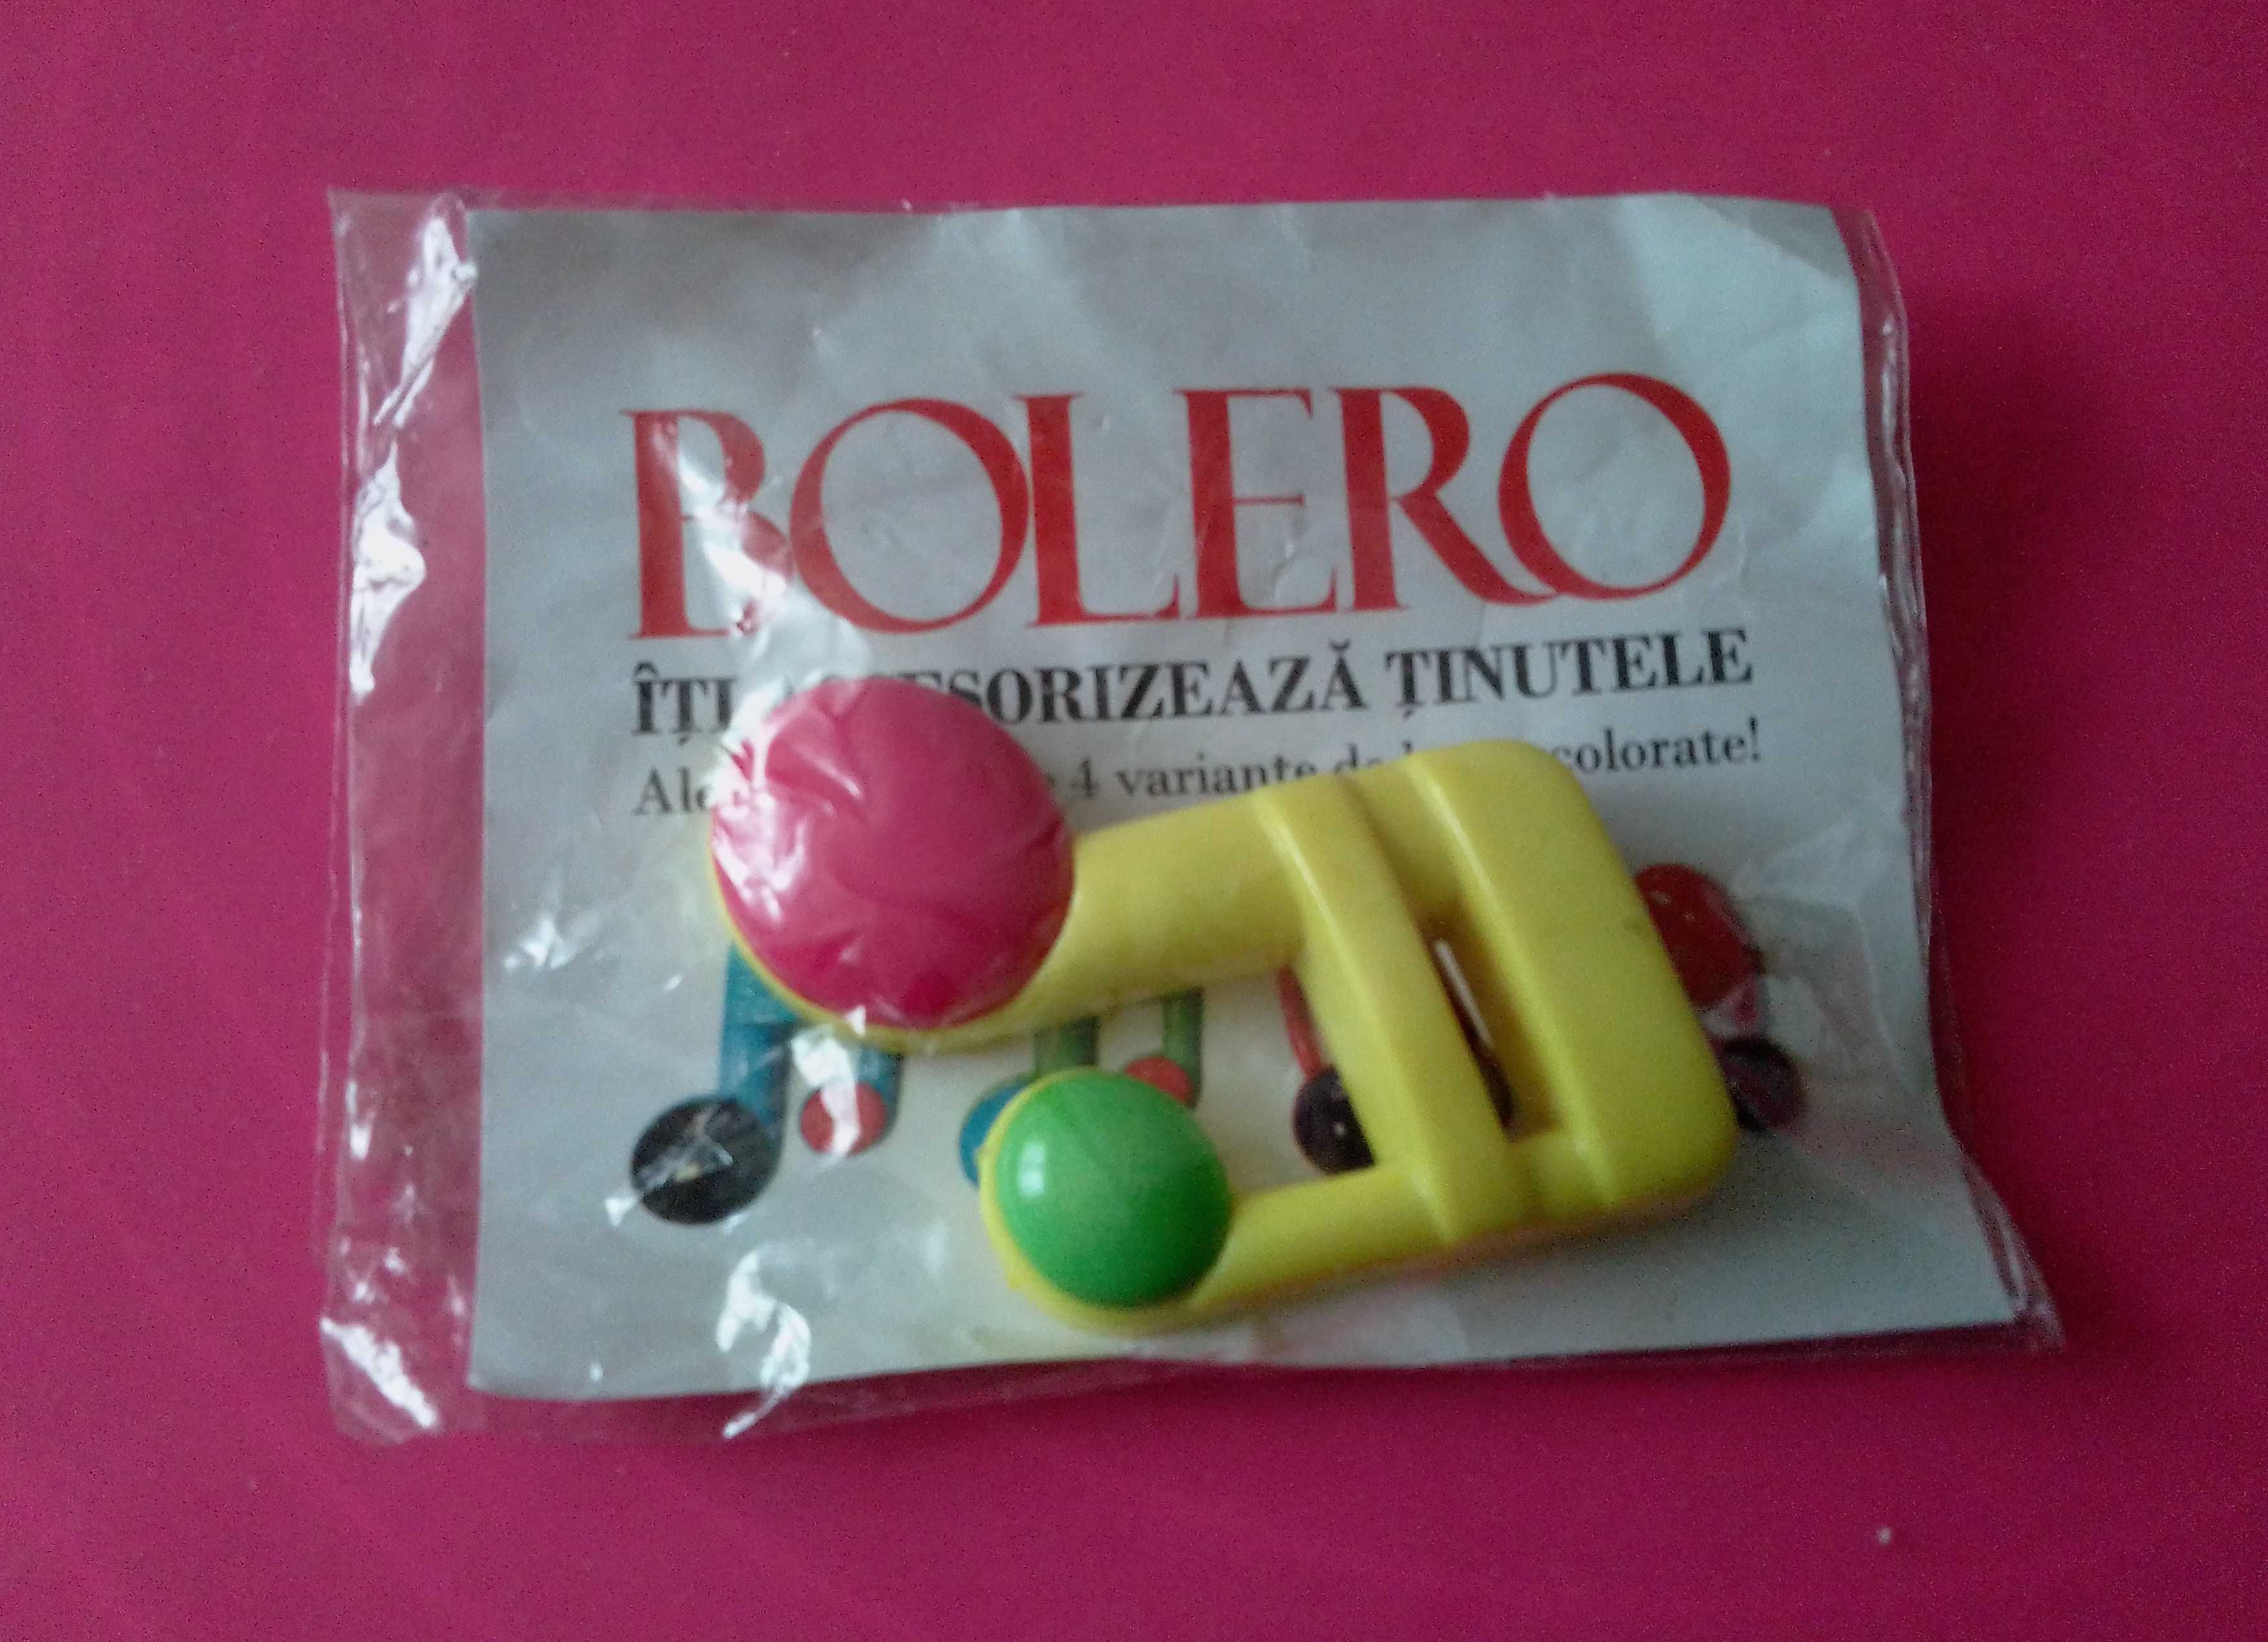 Accesoriu insigna marca Bolero, din plastic, accesoriu de imbracaminte